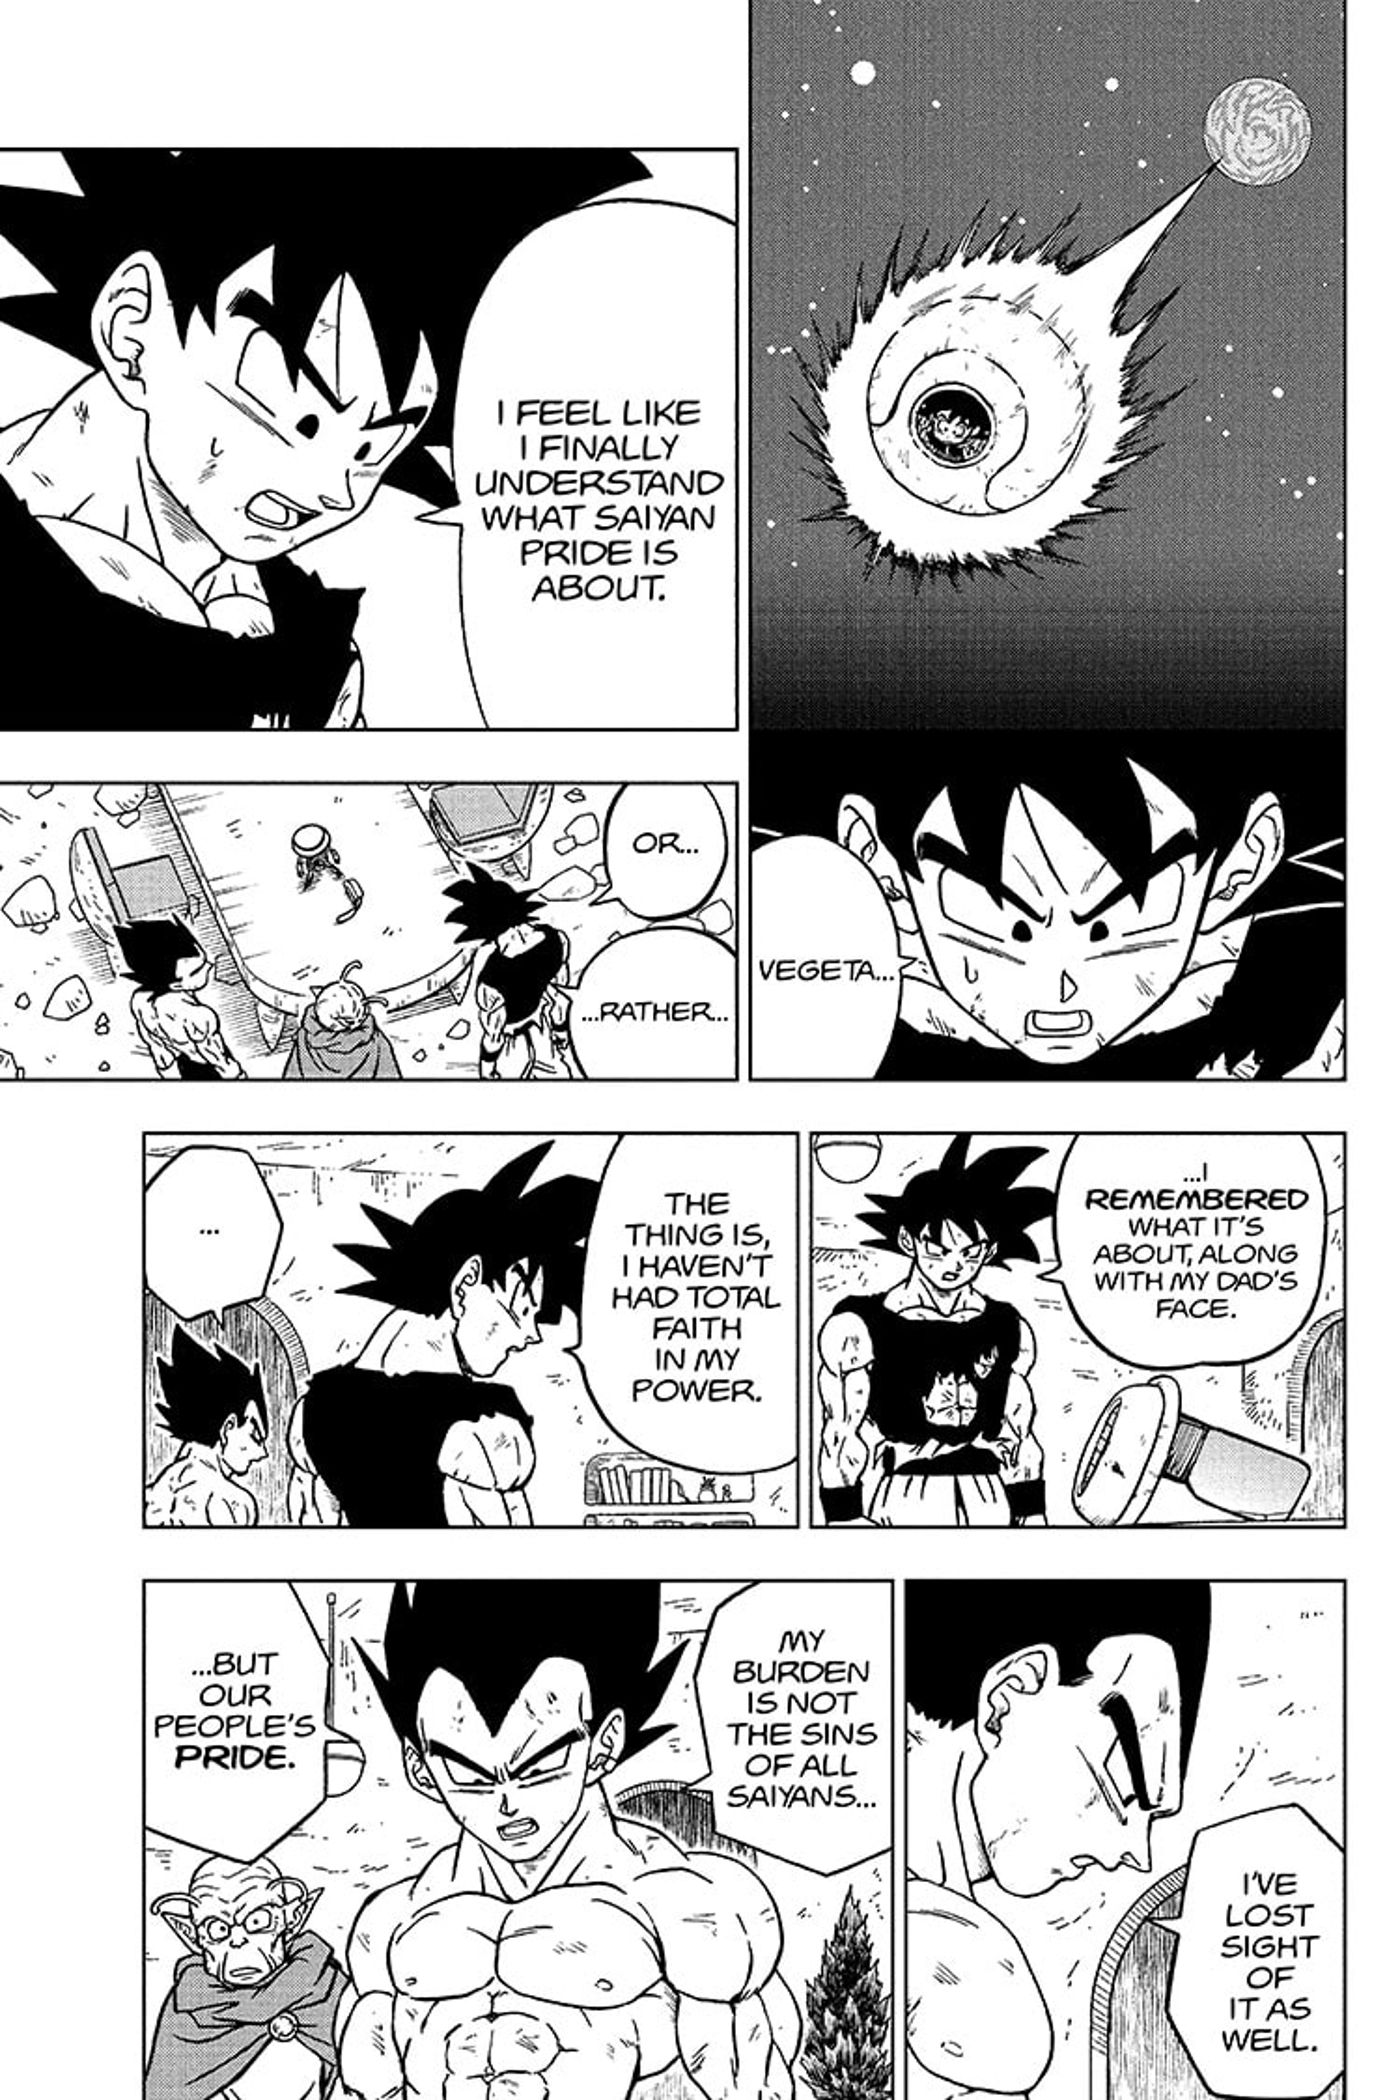 Goku and Vegeta reflect on their Saiyan heritage